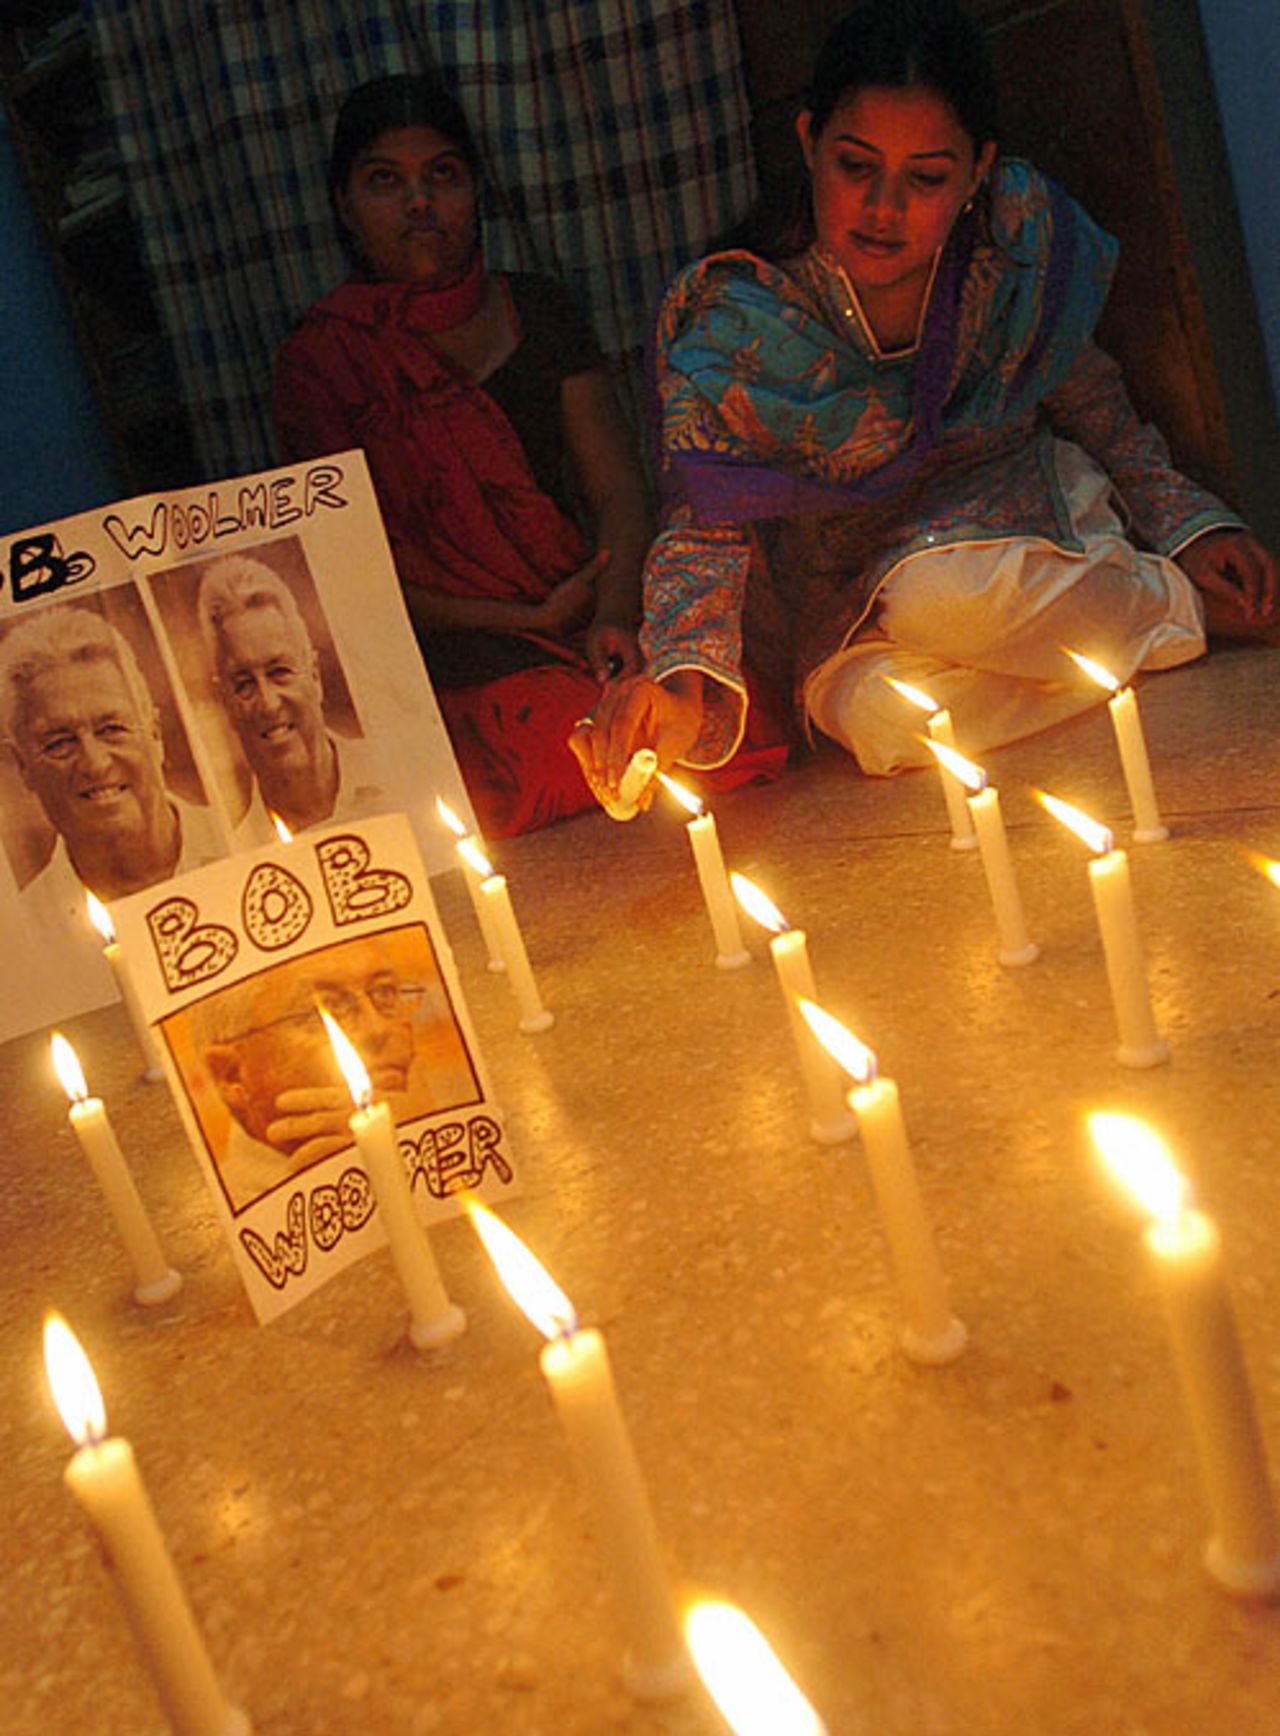 A Pakistan fan lights candles in memory of Bob Woolmer, March 21, 2007, Karachi